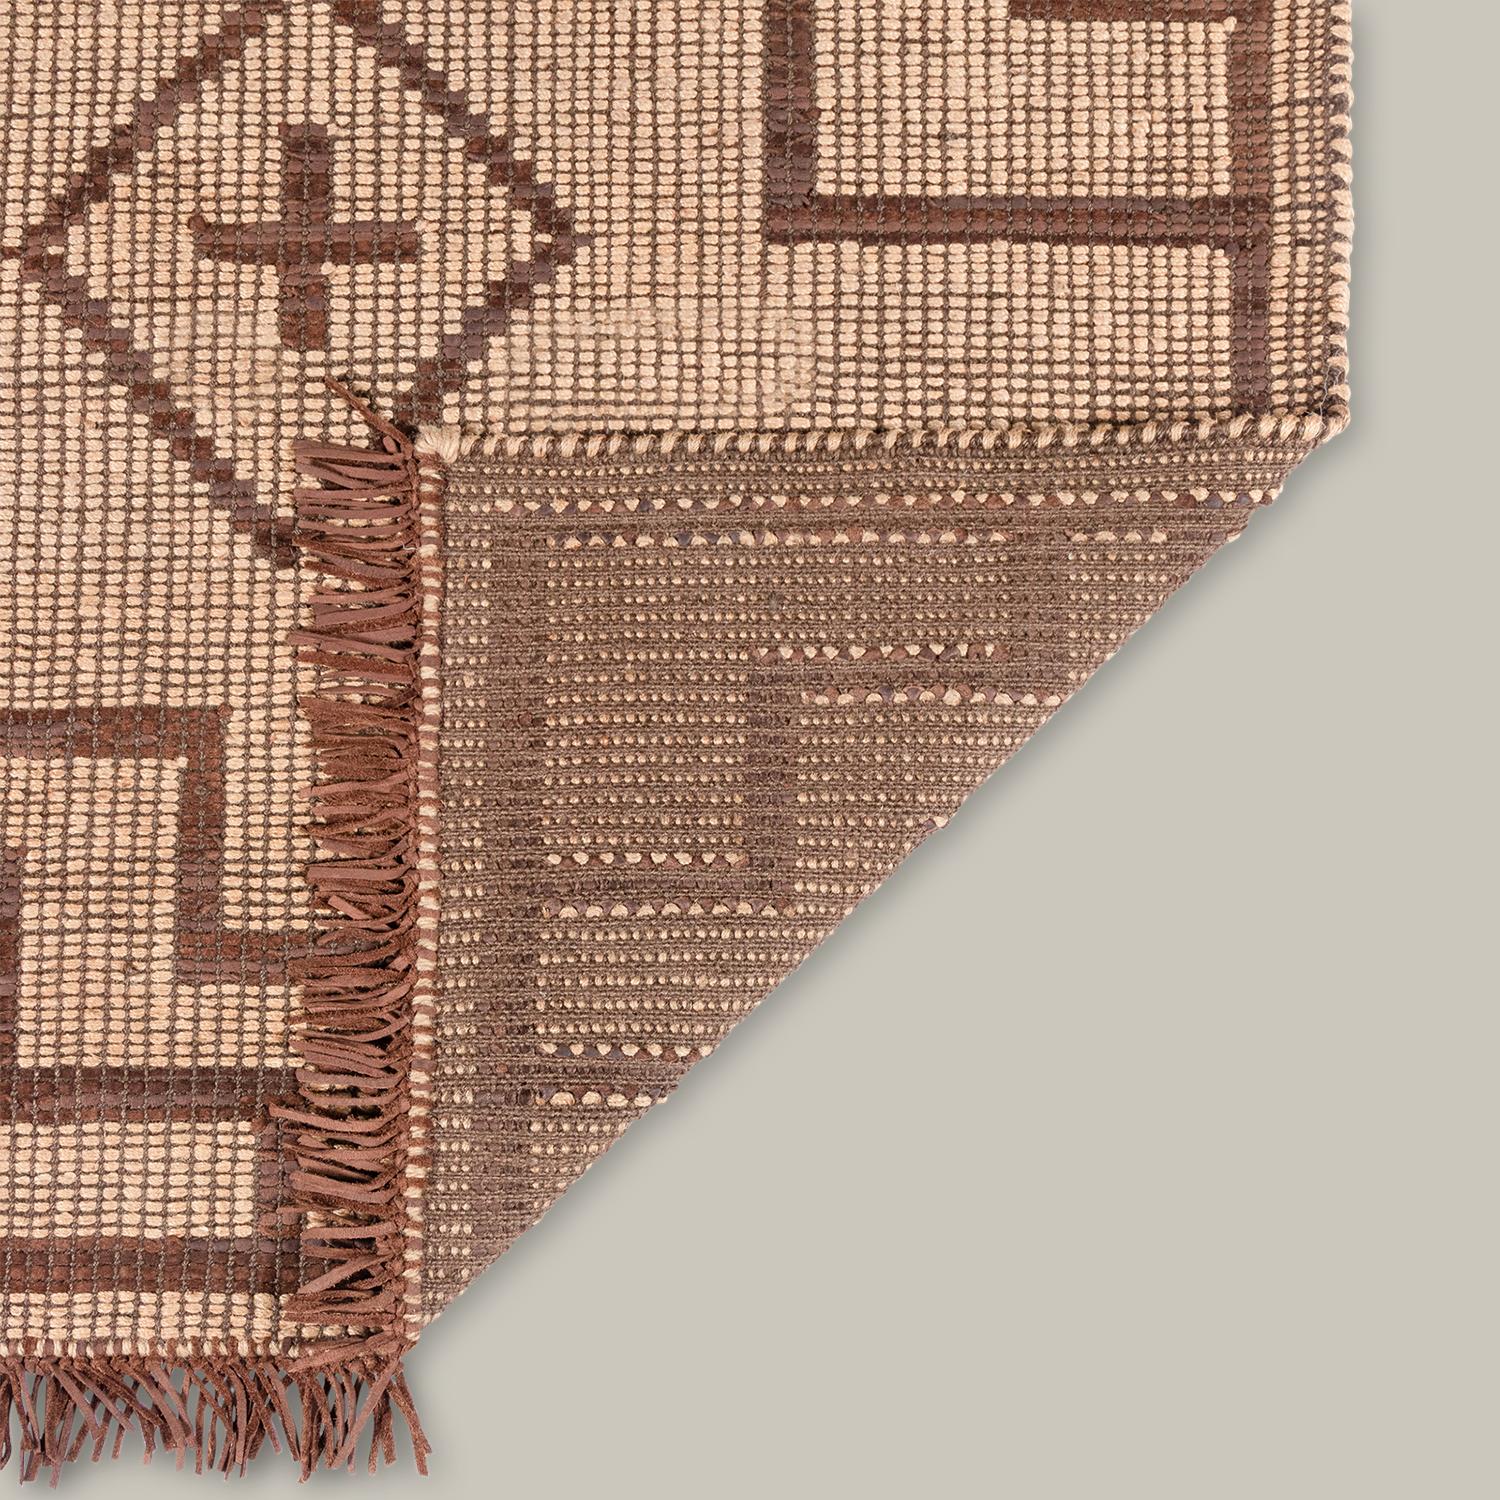 Die Tugart Collection ist eine moderne Variante der traditionellen Tuareg-Matten und zelebriert die Eleganz des Minimalismus. Die handgeflochtene Konstruktion aus Leder und Jute ist historisch gewachsen und altert anmutig. Eine handschmeichelnde